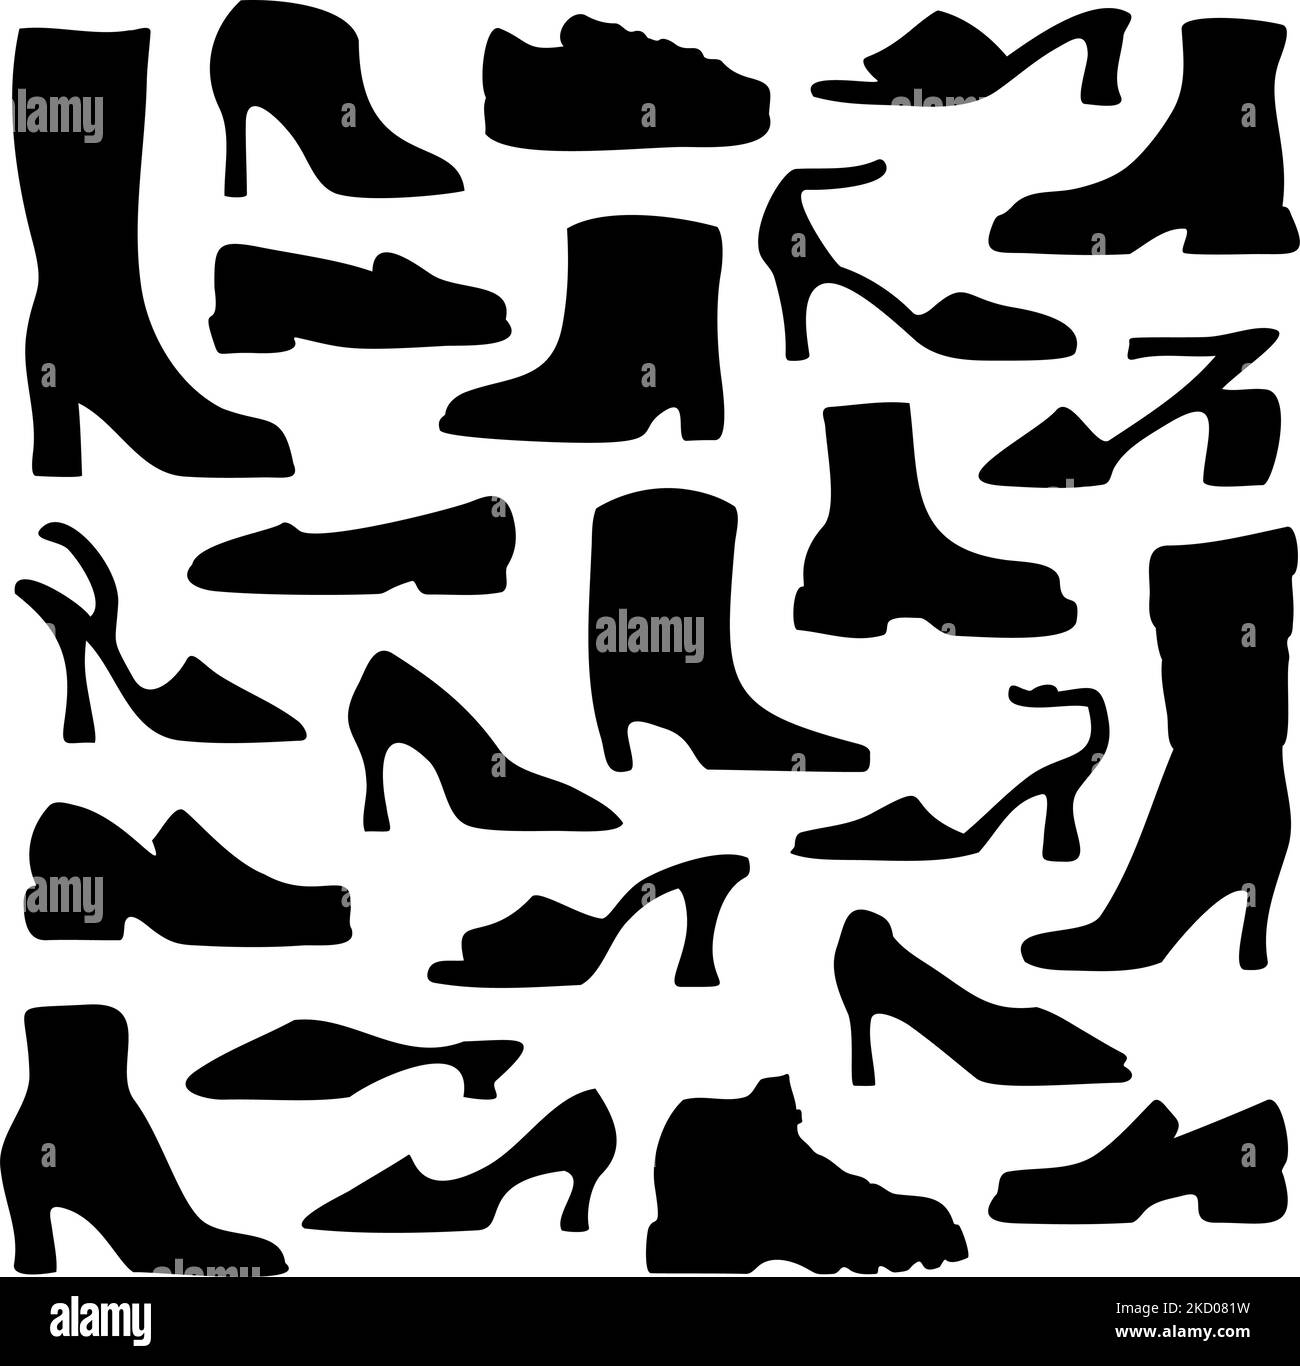 Vektor-Illustration mit Kollektion von Damenschuhen. Set mit Silhouetten von Damenschuhen. Stock Vektor